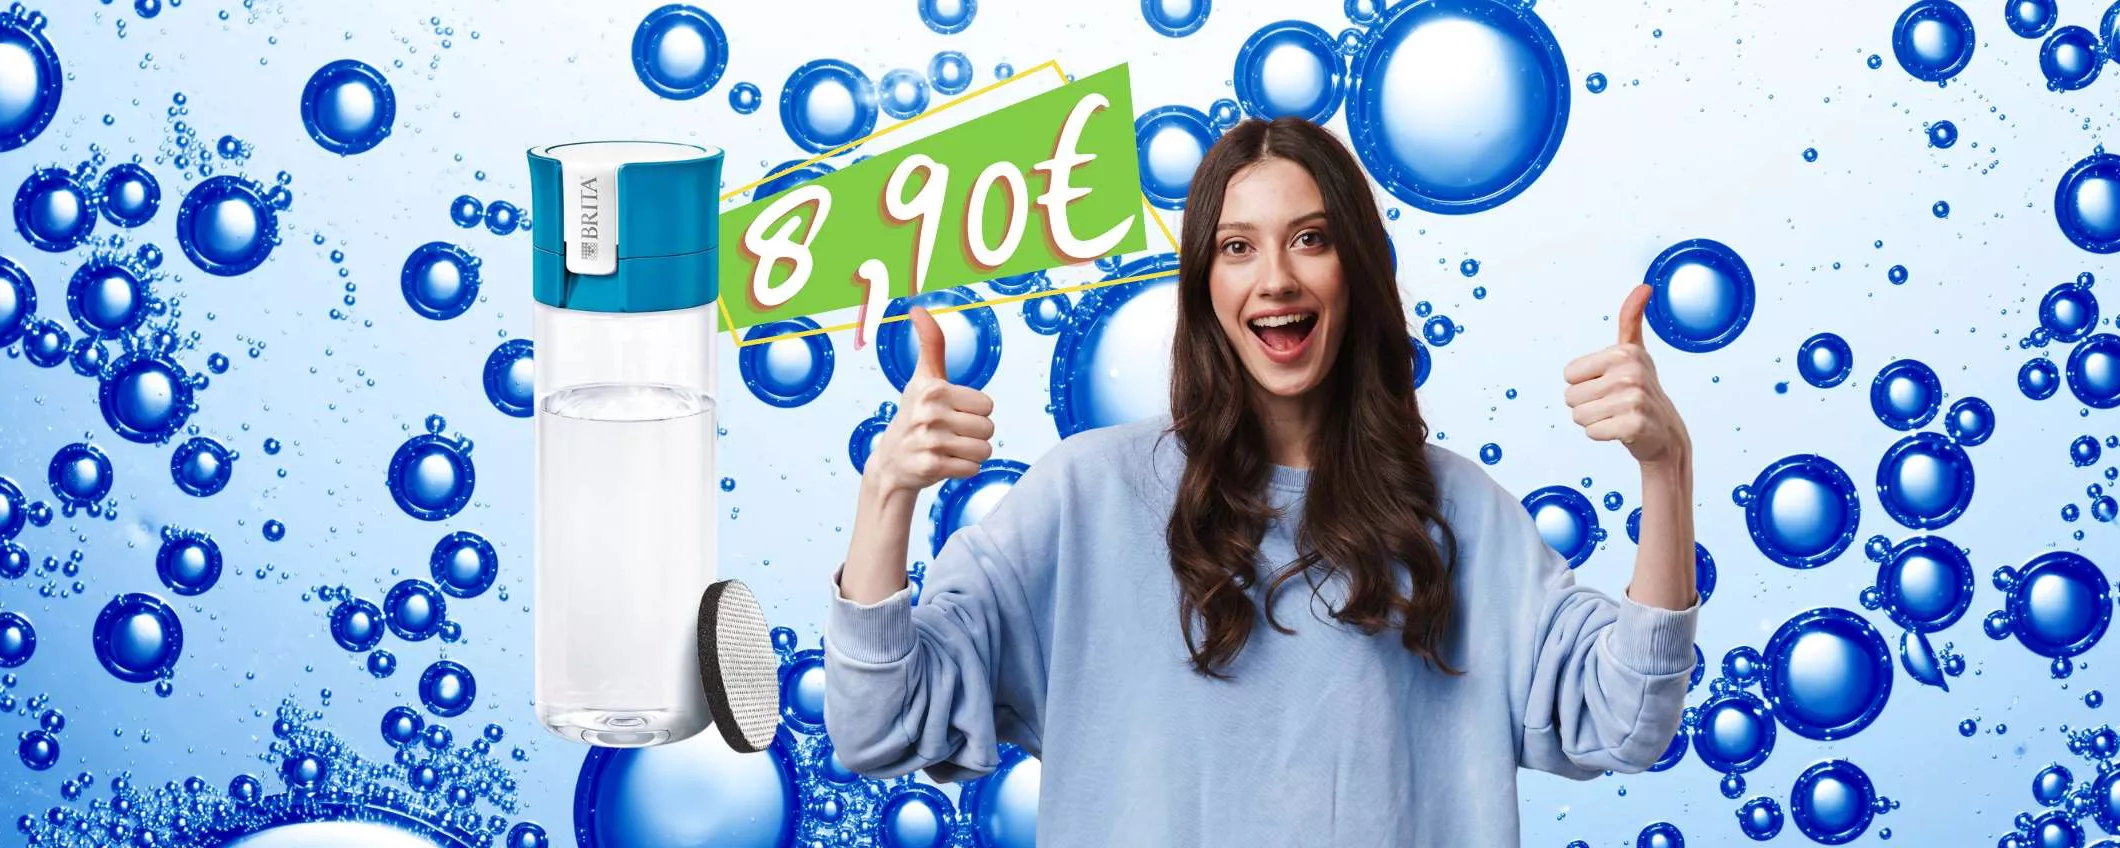 BRITA: bevi l'acqua buona e sana con la borraccia filtrante a 8,90€